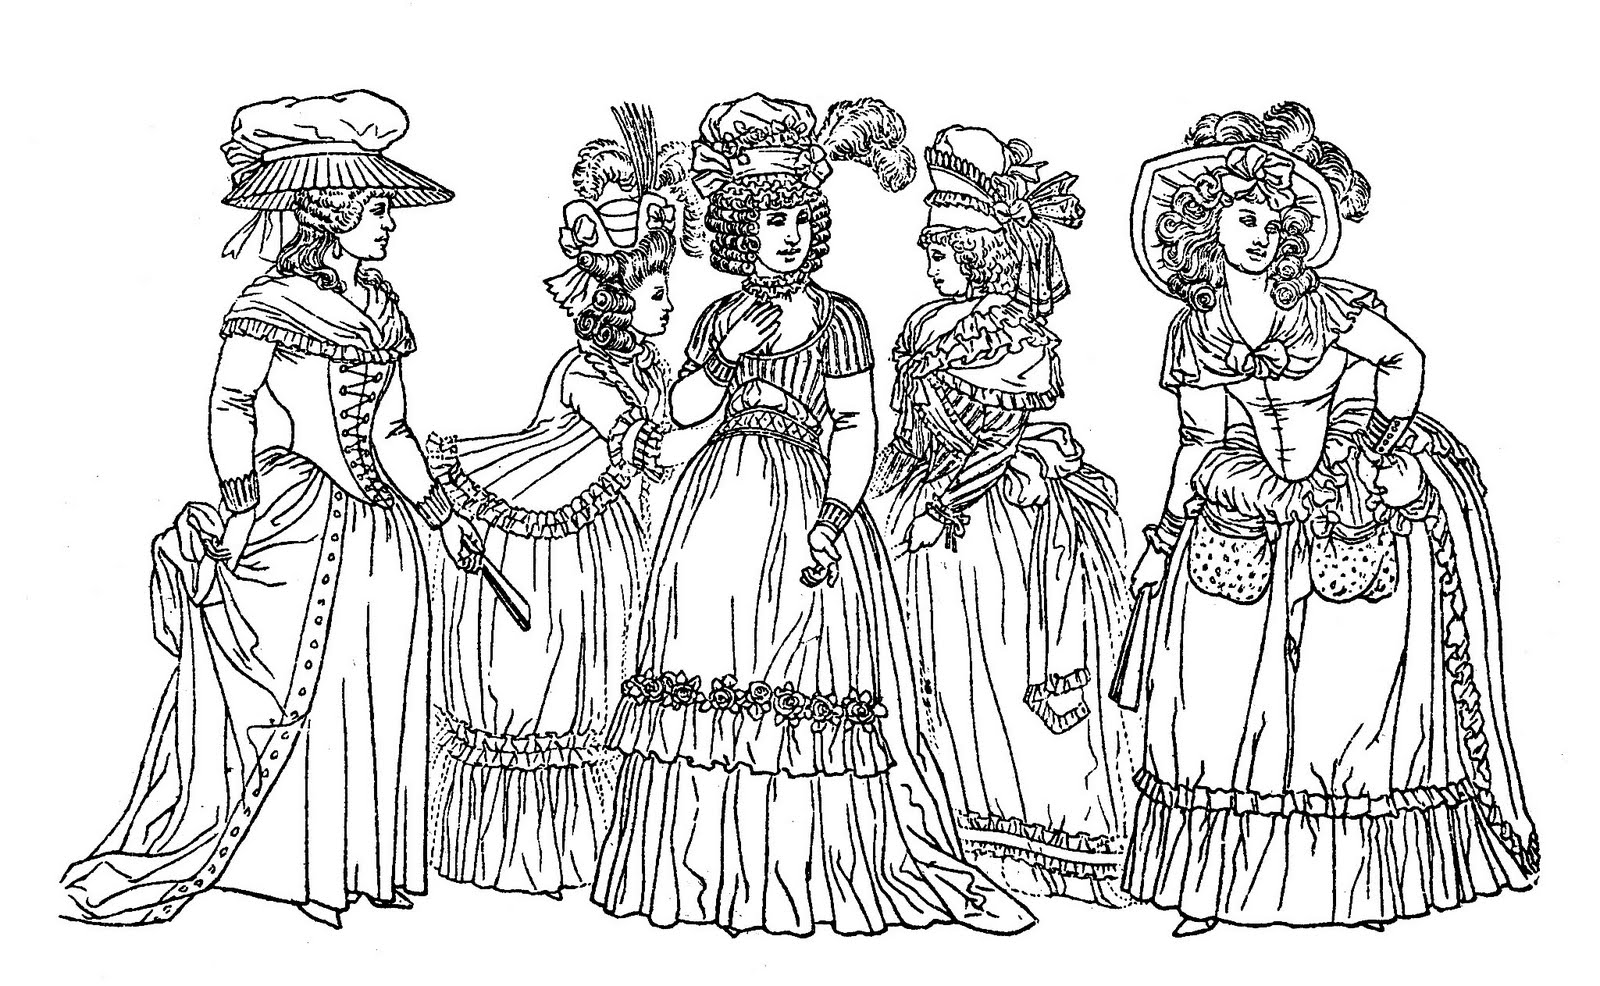 Desenho de mulheres do século XVIII: uma boa representação do estilo de vestuário da época